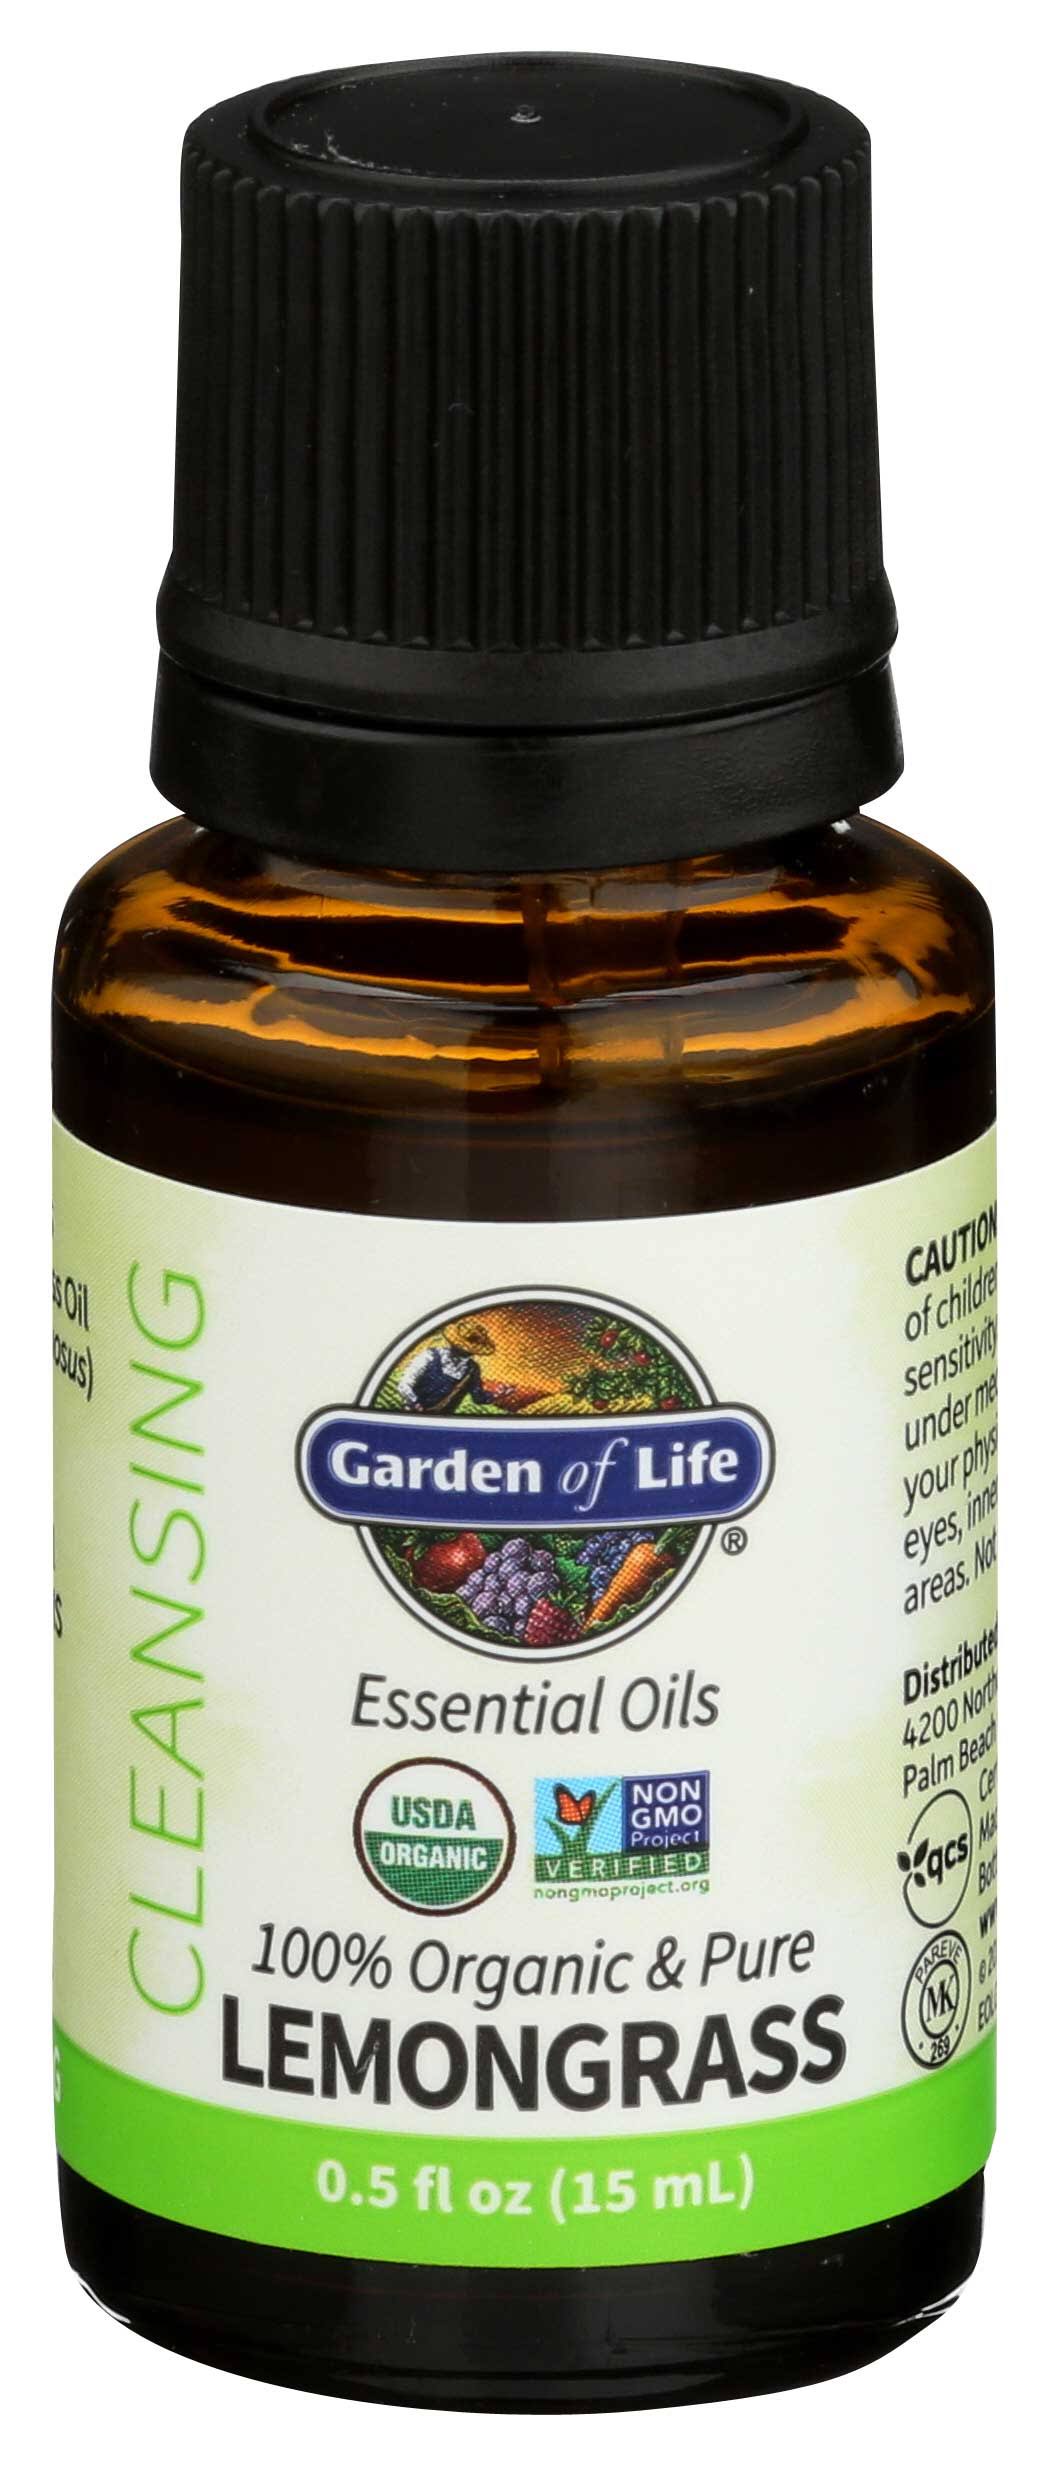 Garden of Life Lemongrass Essential Oil 0.5 fl oz